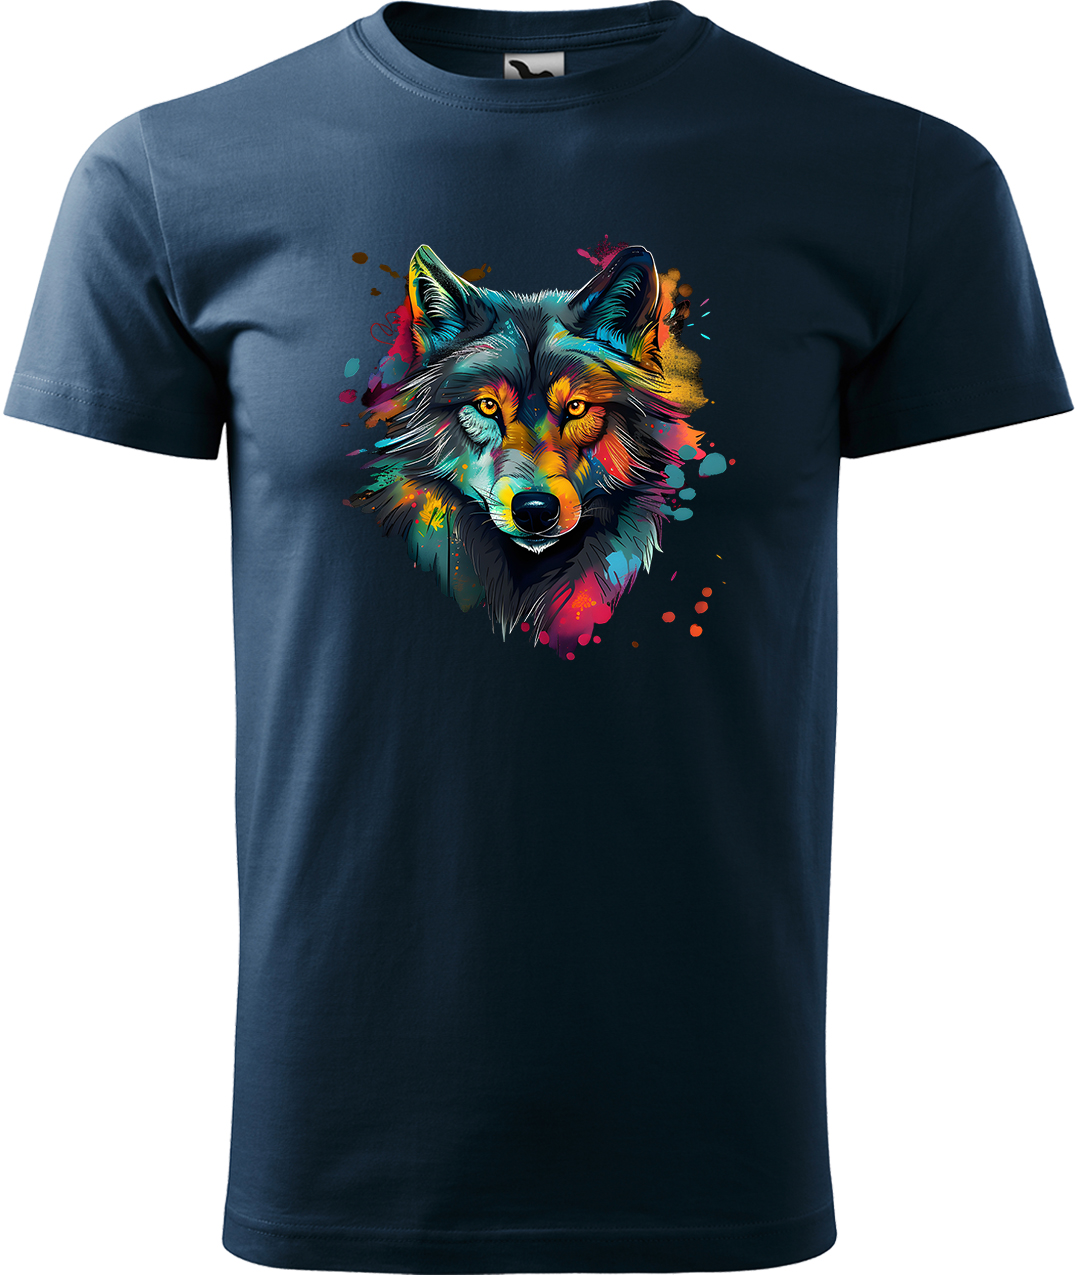 Pánské tričko s vlkem - Malovaný vlk Velikost: XL, Barva: Námořní modrá (02), Střih: pánský